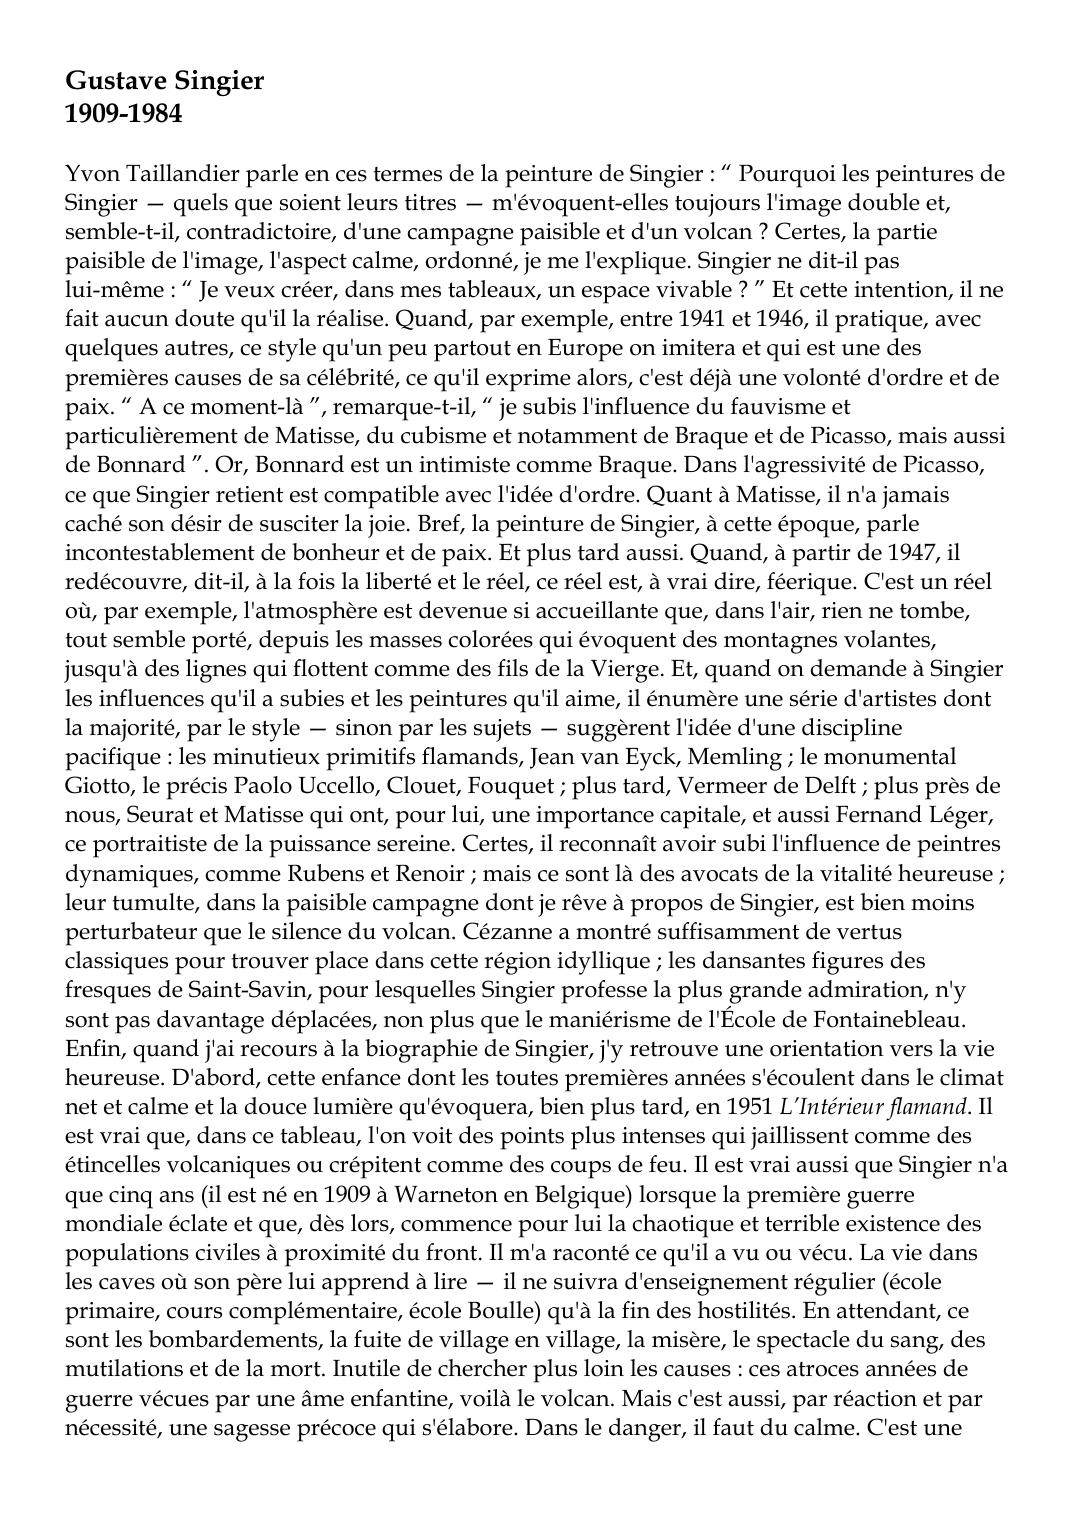 Prévisualisation du document Gustave Singier1909-1984Yvon Taillandier parle en ces termes de la peinture de Singier : " Pourquoi les peintures deSingier -- quels que soient leurs titres -- m'évoquent-elles toujours l'image double et,semble-t-il, contradictoire, d'une campagne paisible et d'un volcan ?